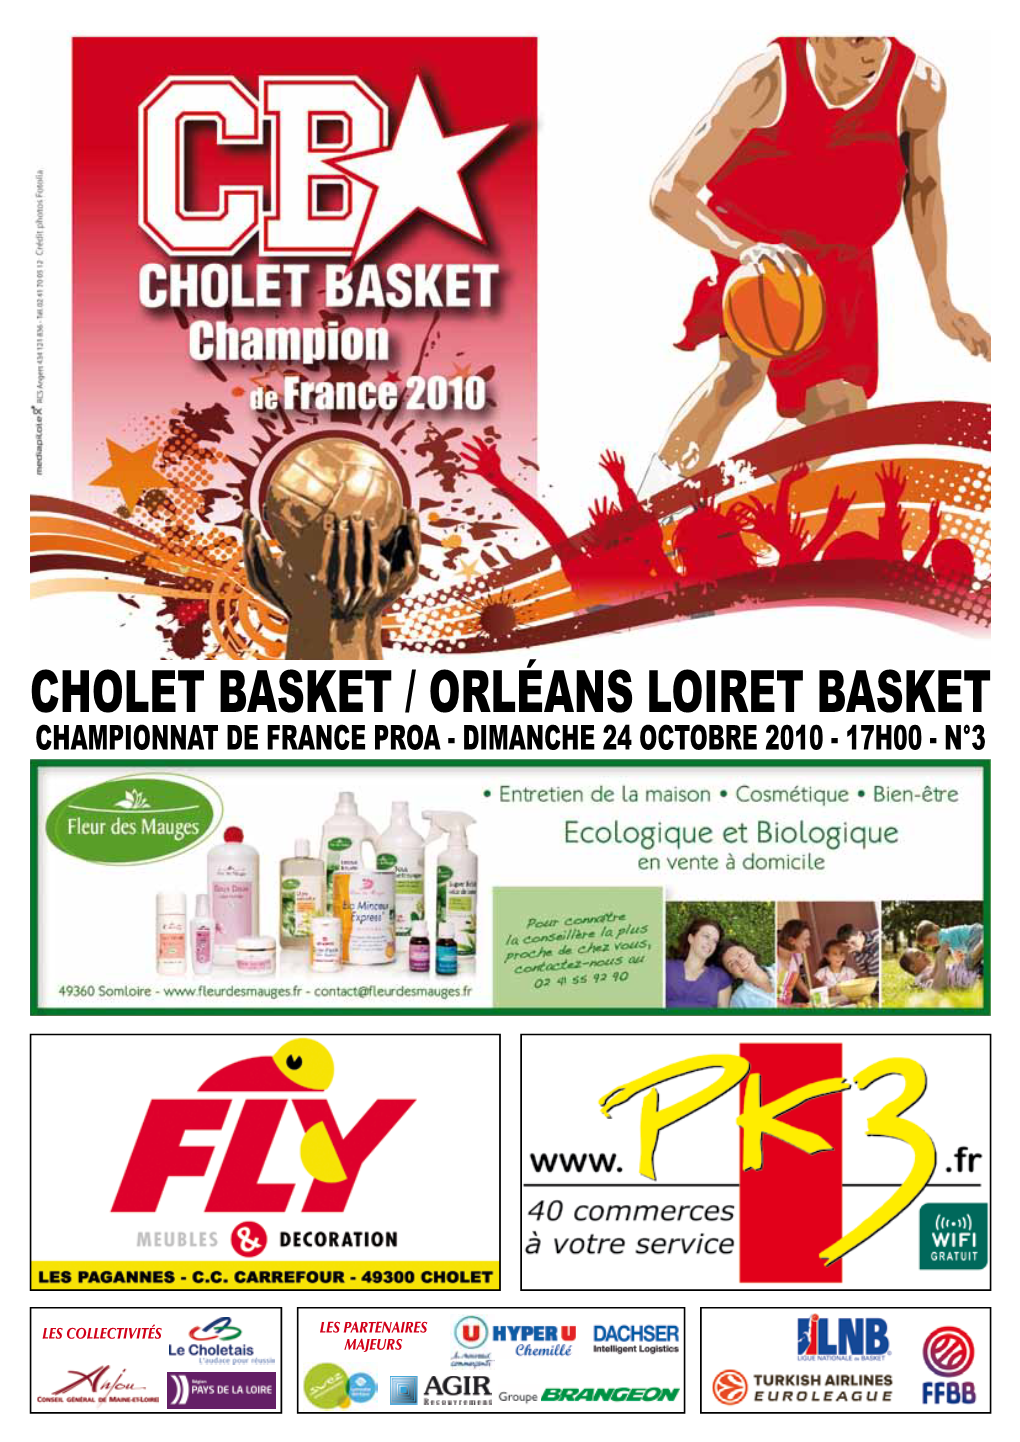 Cholet Basket / Orléans Loiret Basket Championnat De France Proa - Dimanche 24 Octobre 2010 - 17H00 - N°3